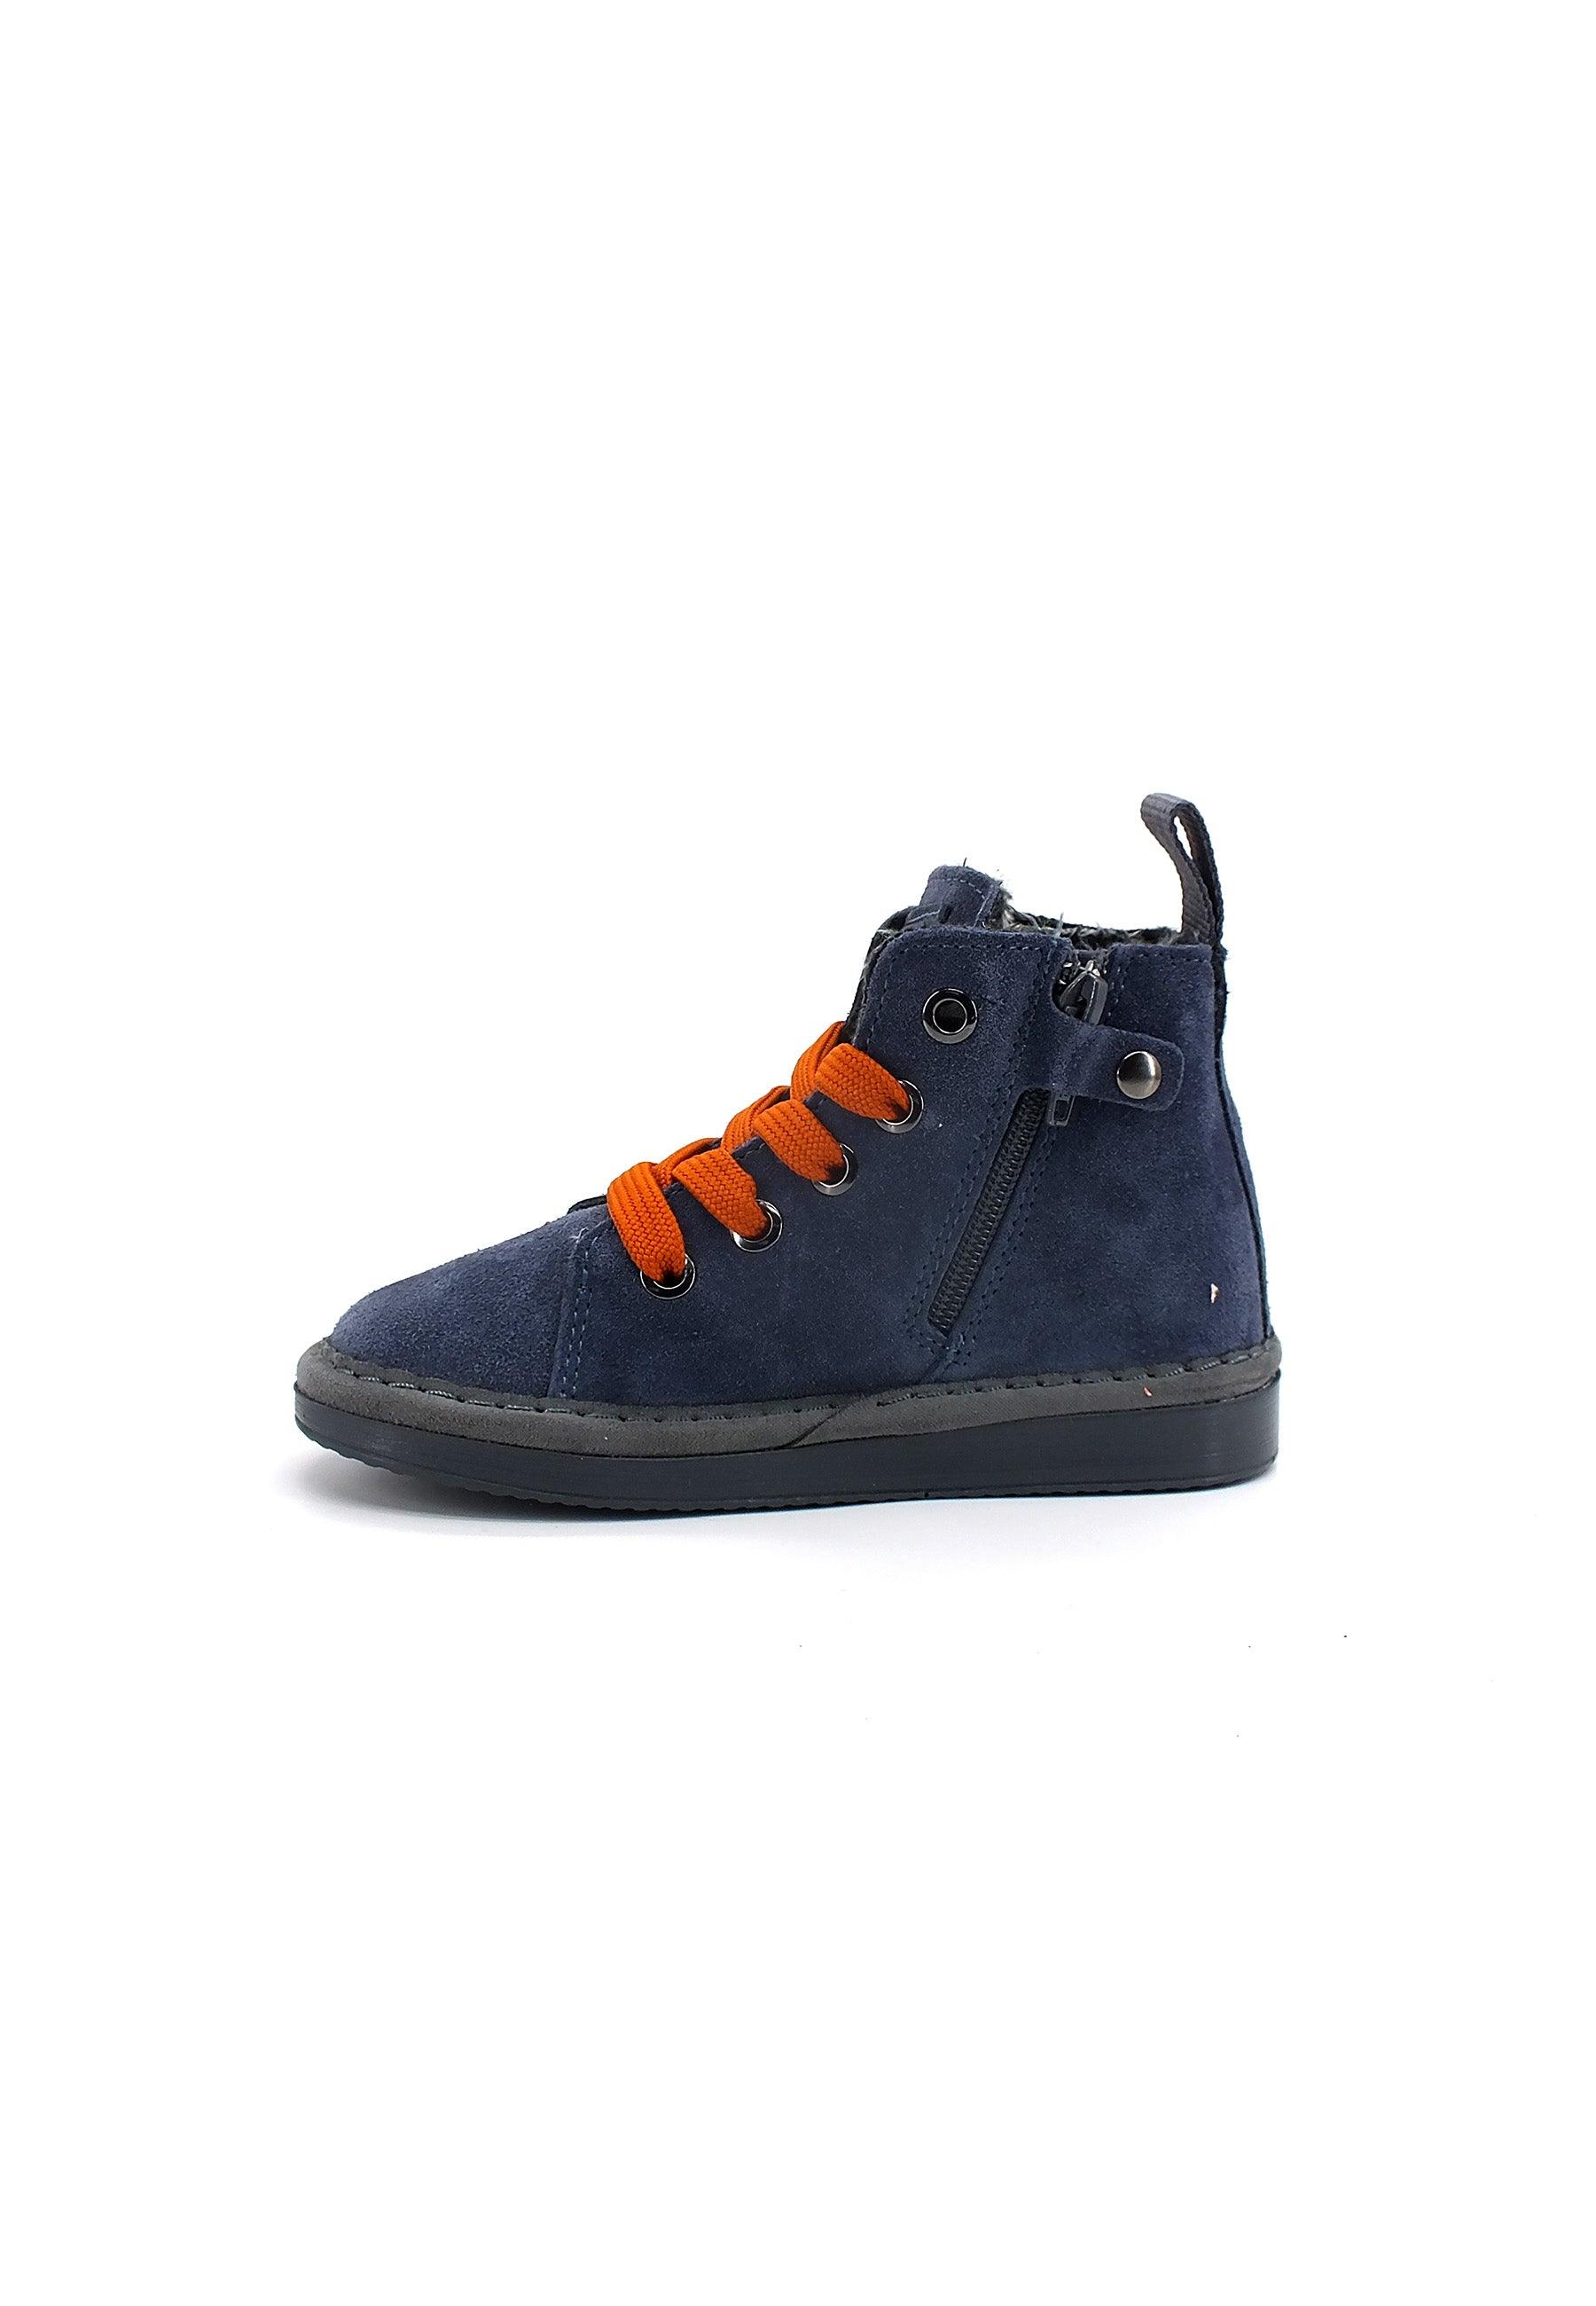 PAN CHIC Ankle Boot Sneaker Pelo Bimbo Dark Blue Burnt Orange P01B1400200006 - Sandrini Calzature e Abbigliamento